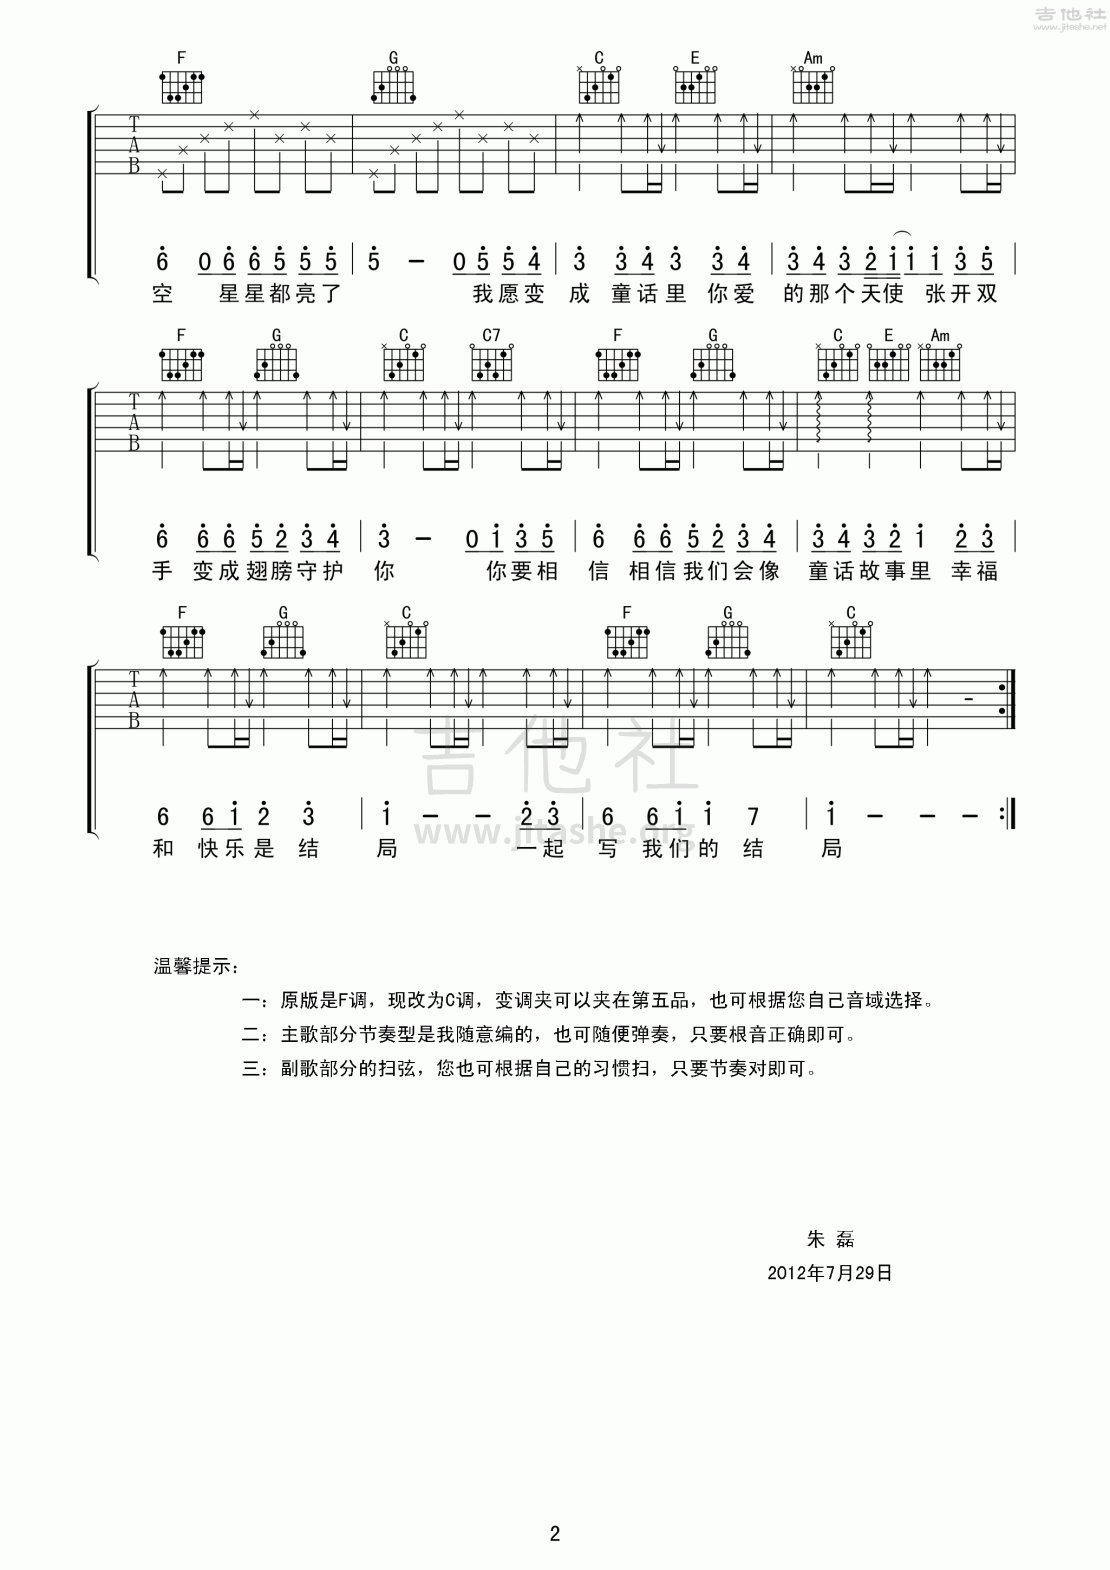 童话吉他谱(图片谱,弹唱,分解和弦)_光良(王光良;Michael Wong)_童话022.gif